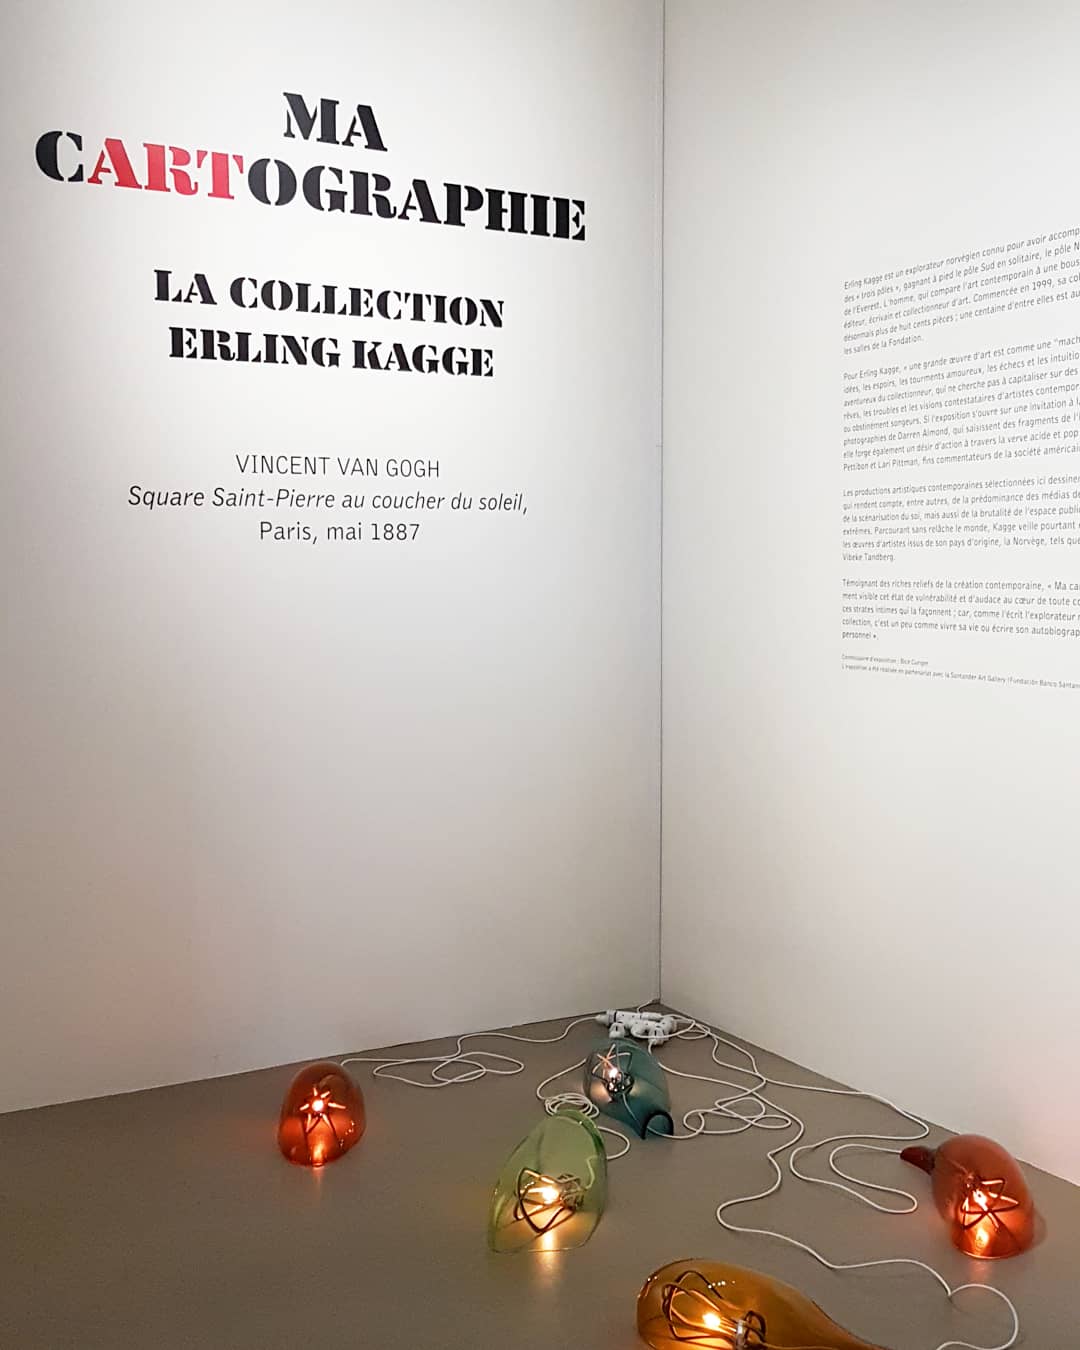 Exposition Ma Cartographie - Collection Erling Kagge 2020/2021 à la Fondation Van Gogh à Arles